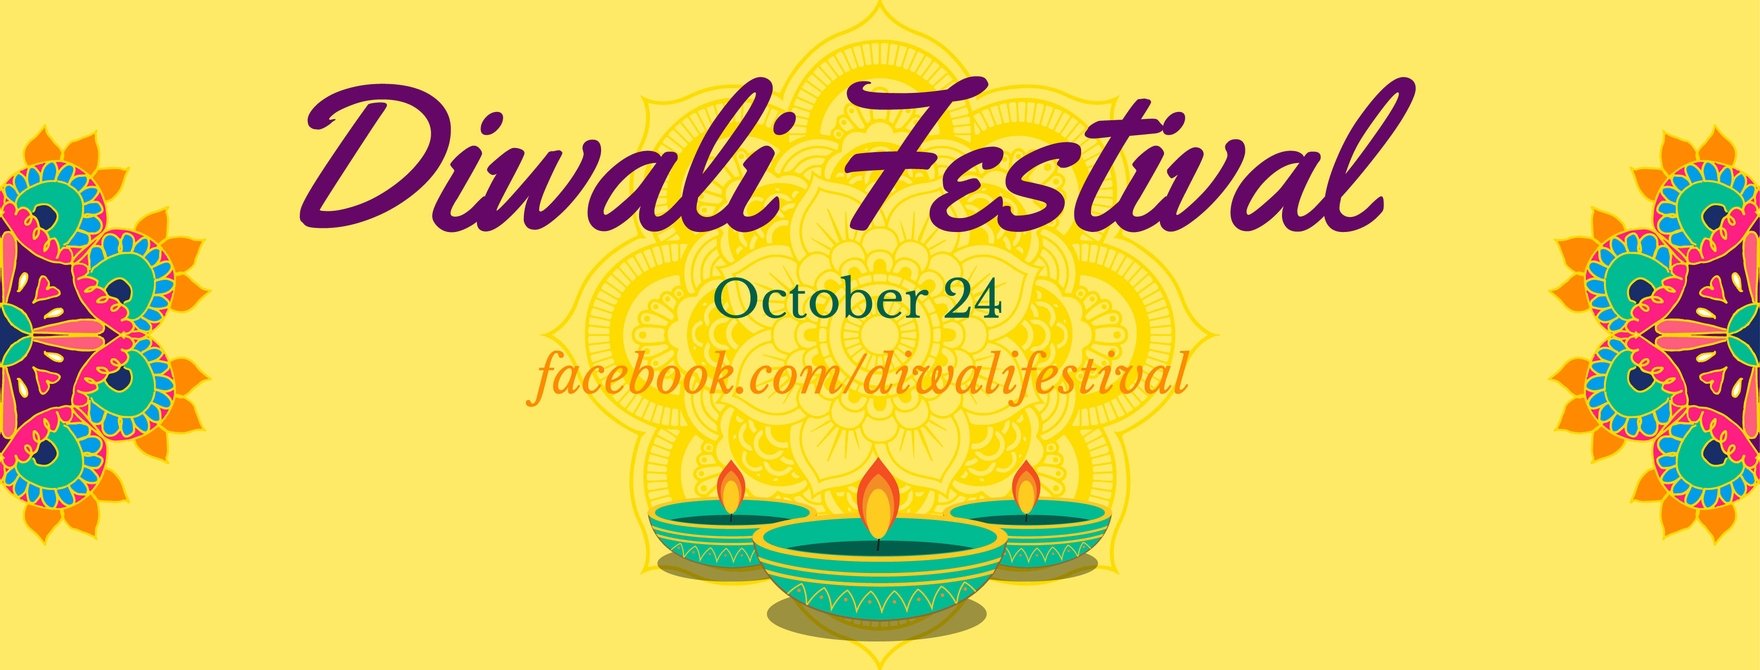 Free Diwali Facebook Cover Banner in Illustrator, PSD, EPS, SVG, JPG, PNG